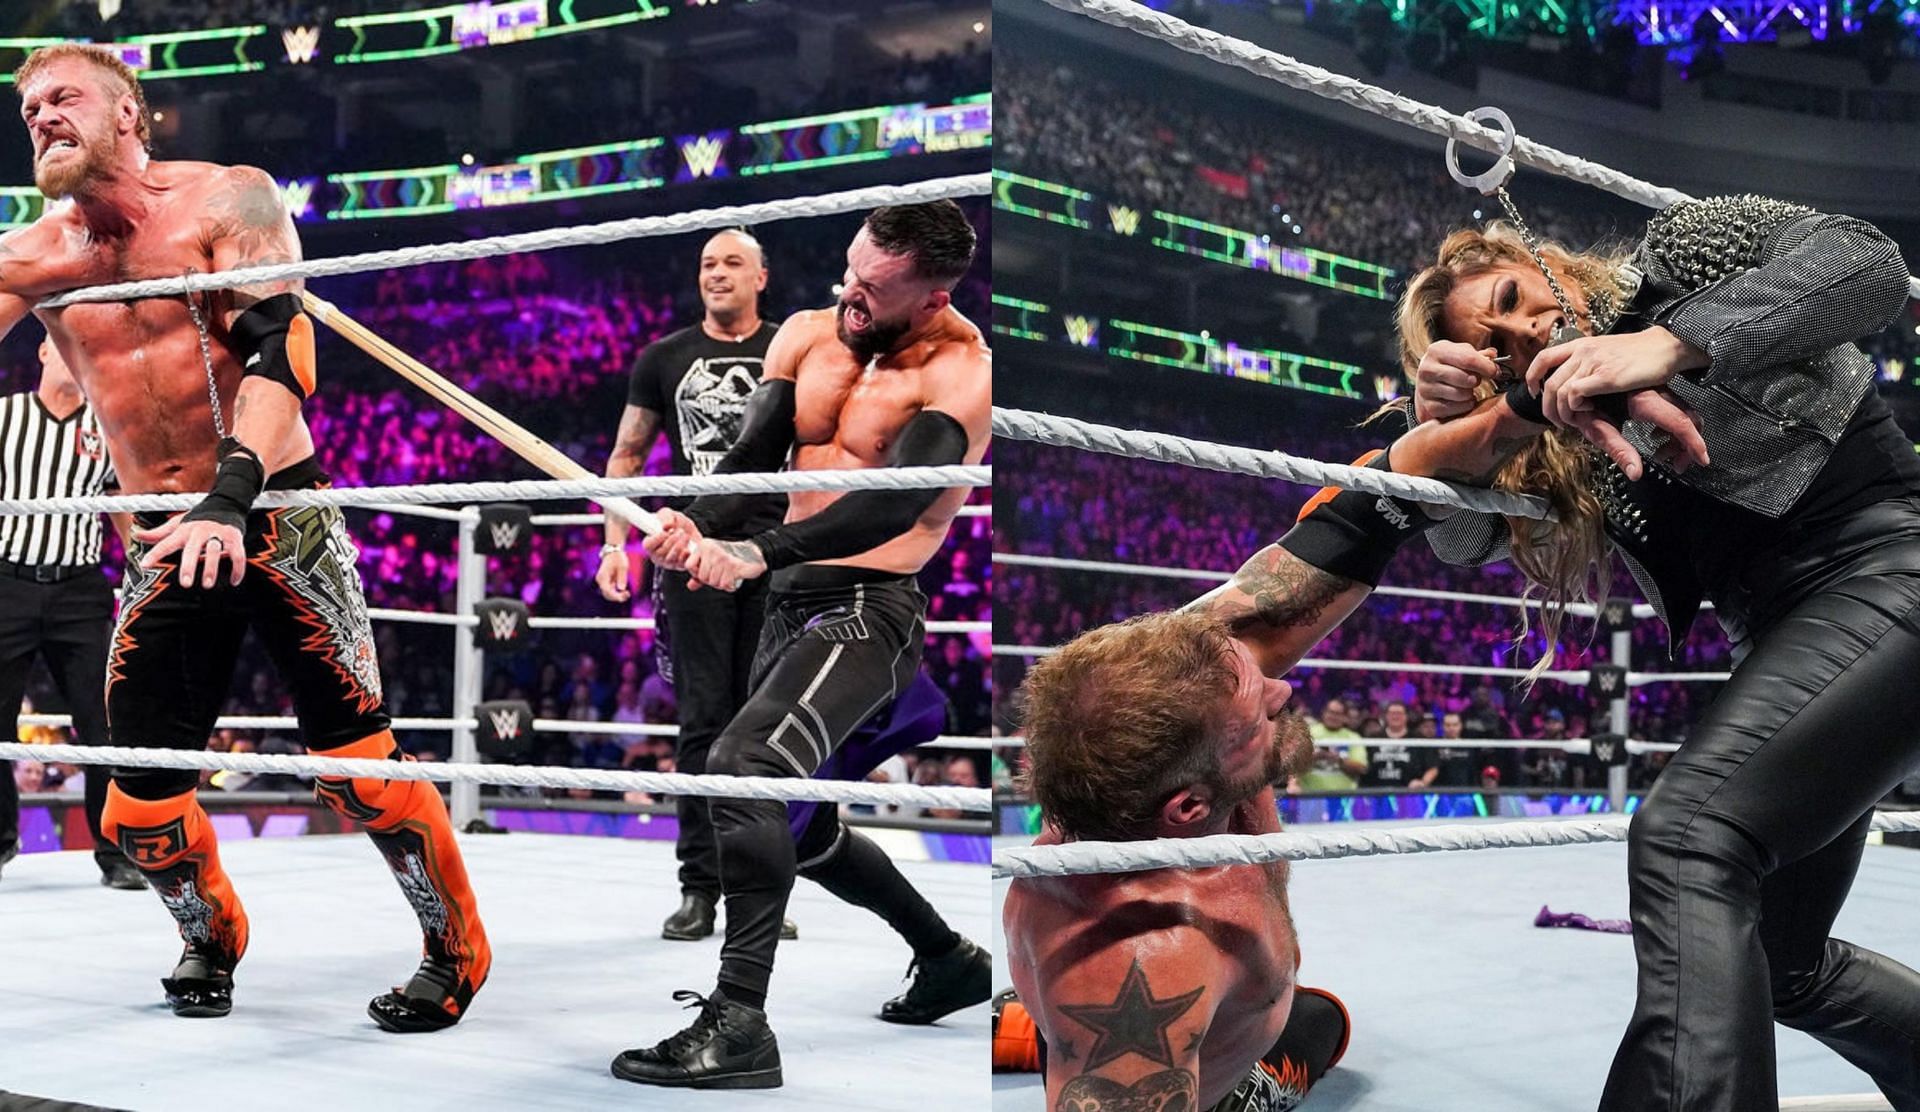 WWE Extreme Rules में ऐज और फिन बैलर के बीच मैच देखने को मिला था 